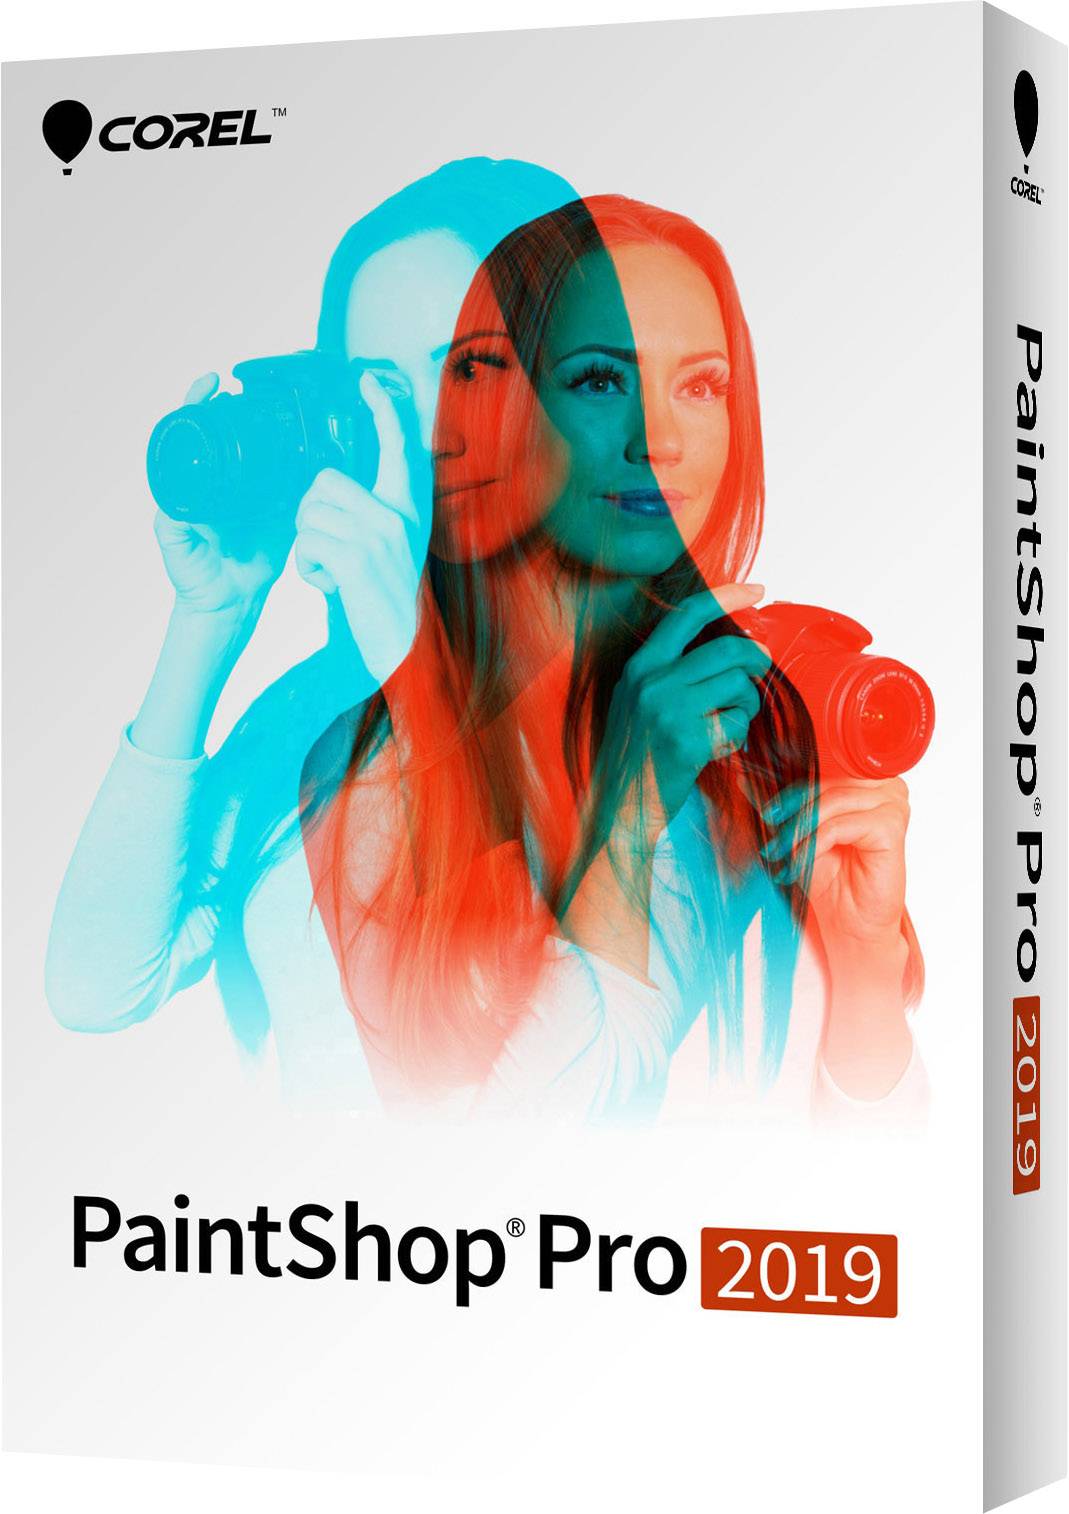 paintshop pro 2019